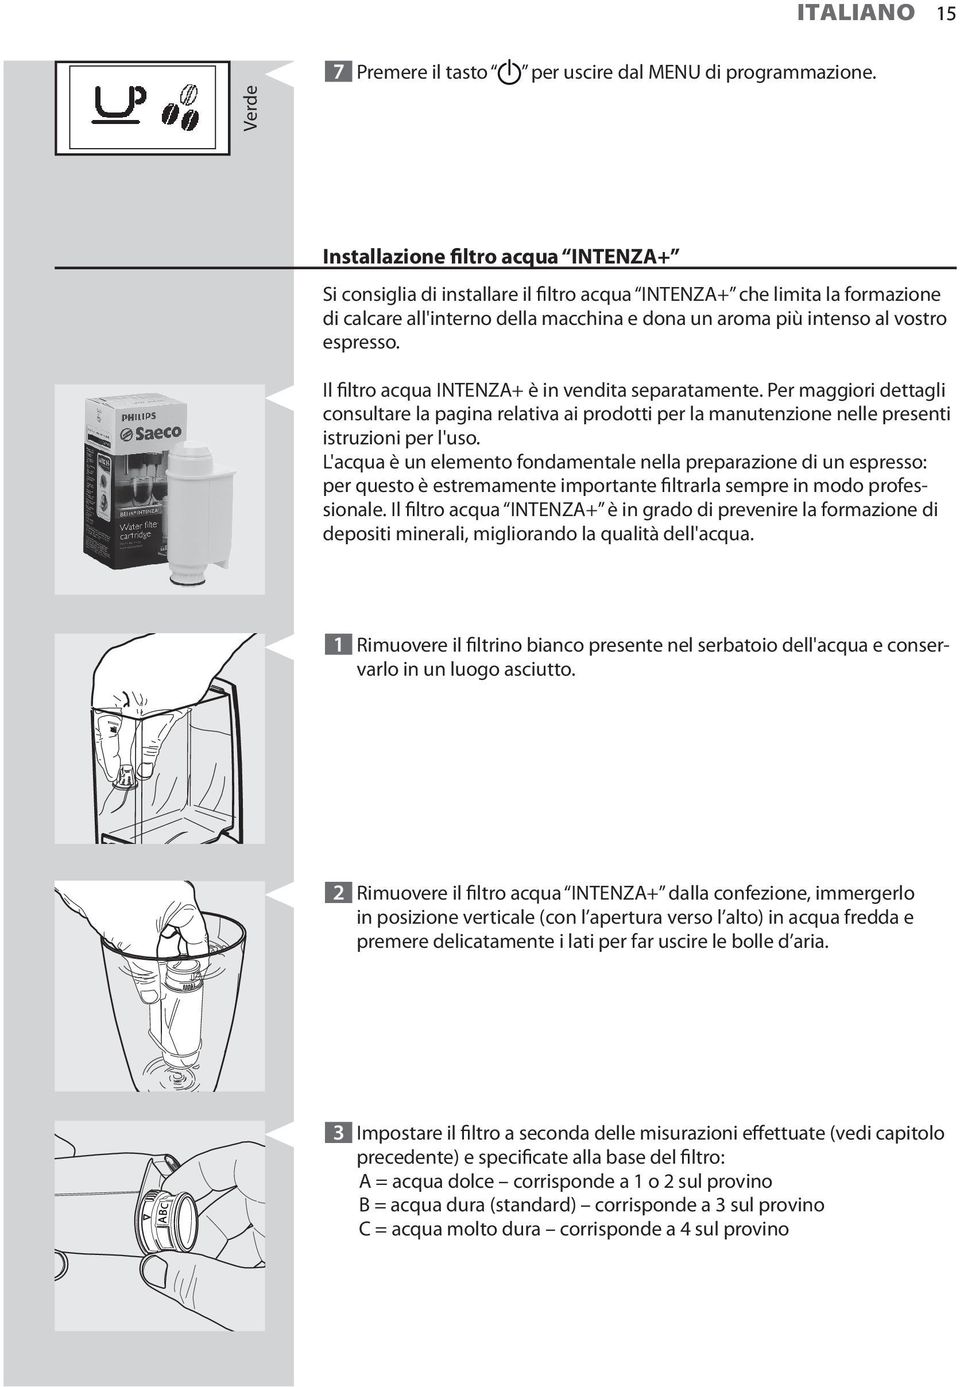 Il filtro acqua INTENZA+ è in vendita separatamente. Per maggiori dettagli consultare la pagina relativa ai prodotti per la manutenzione nelle presenti istruzioni per l'uso.